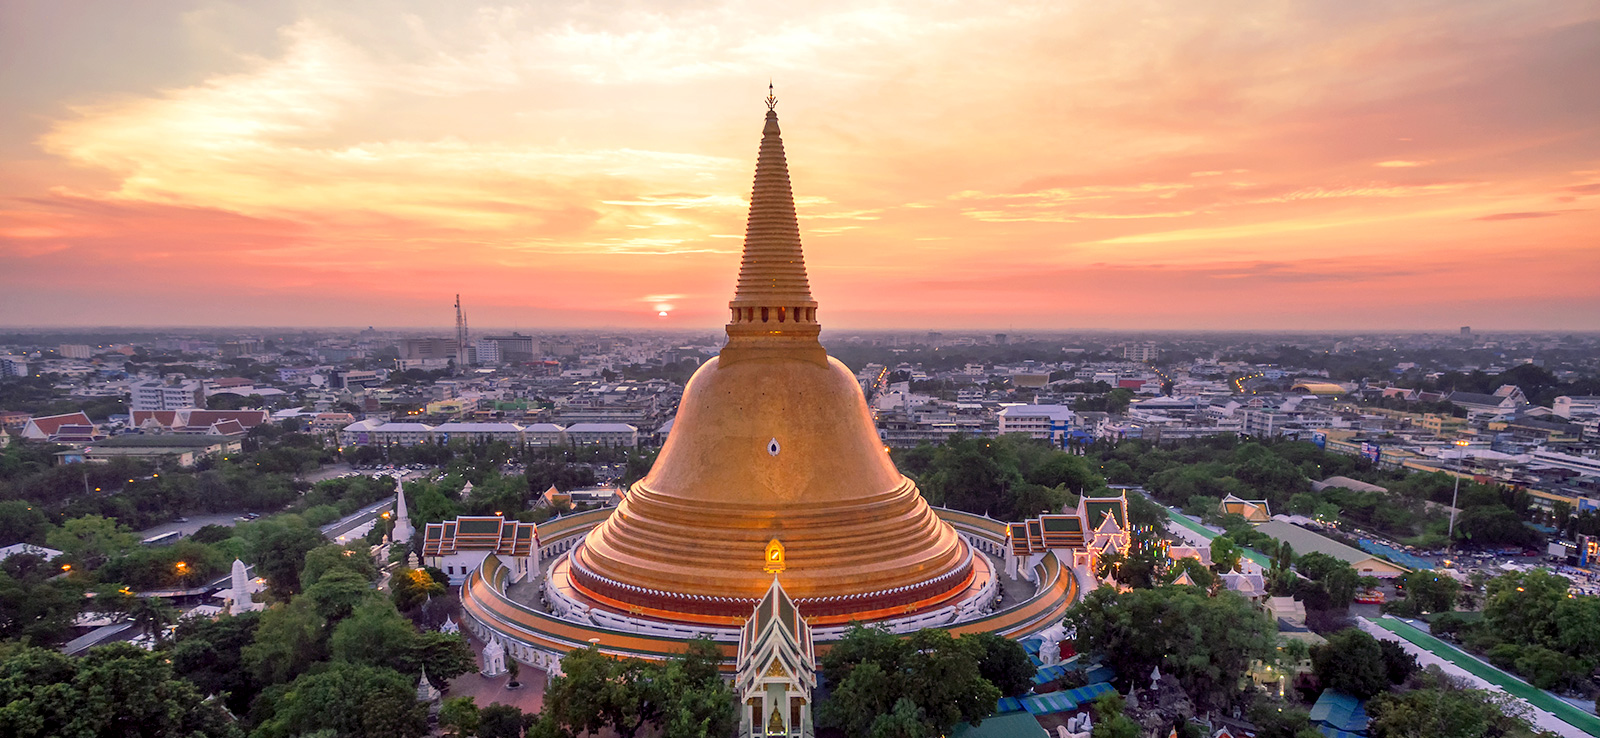 Tòa phật tháp cao hạng nhất thế giới ở thị trấn Nakhon Pathom